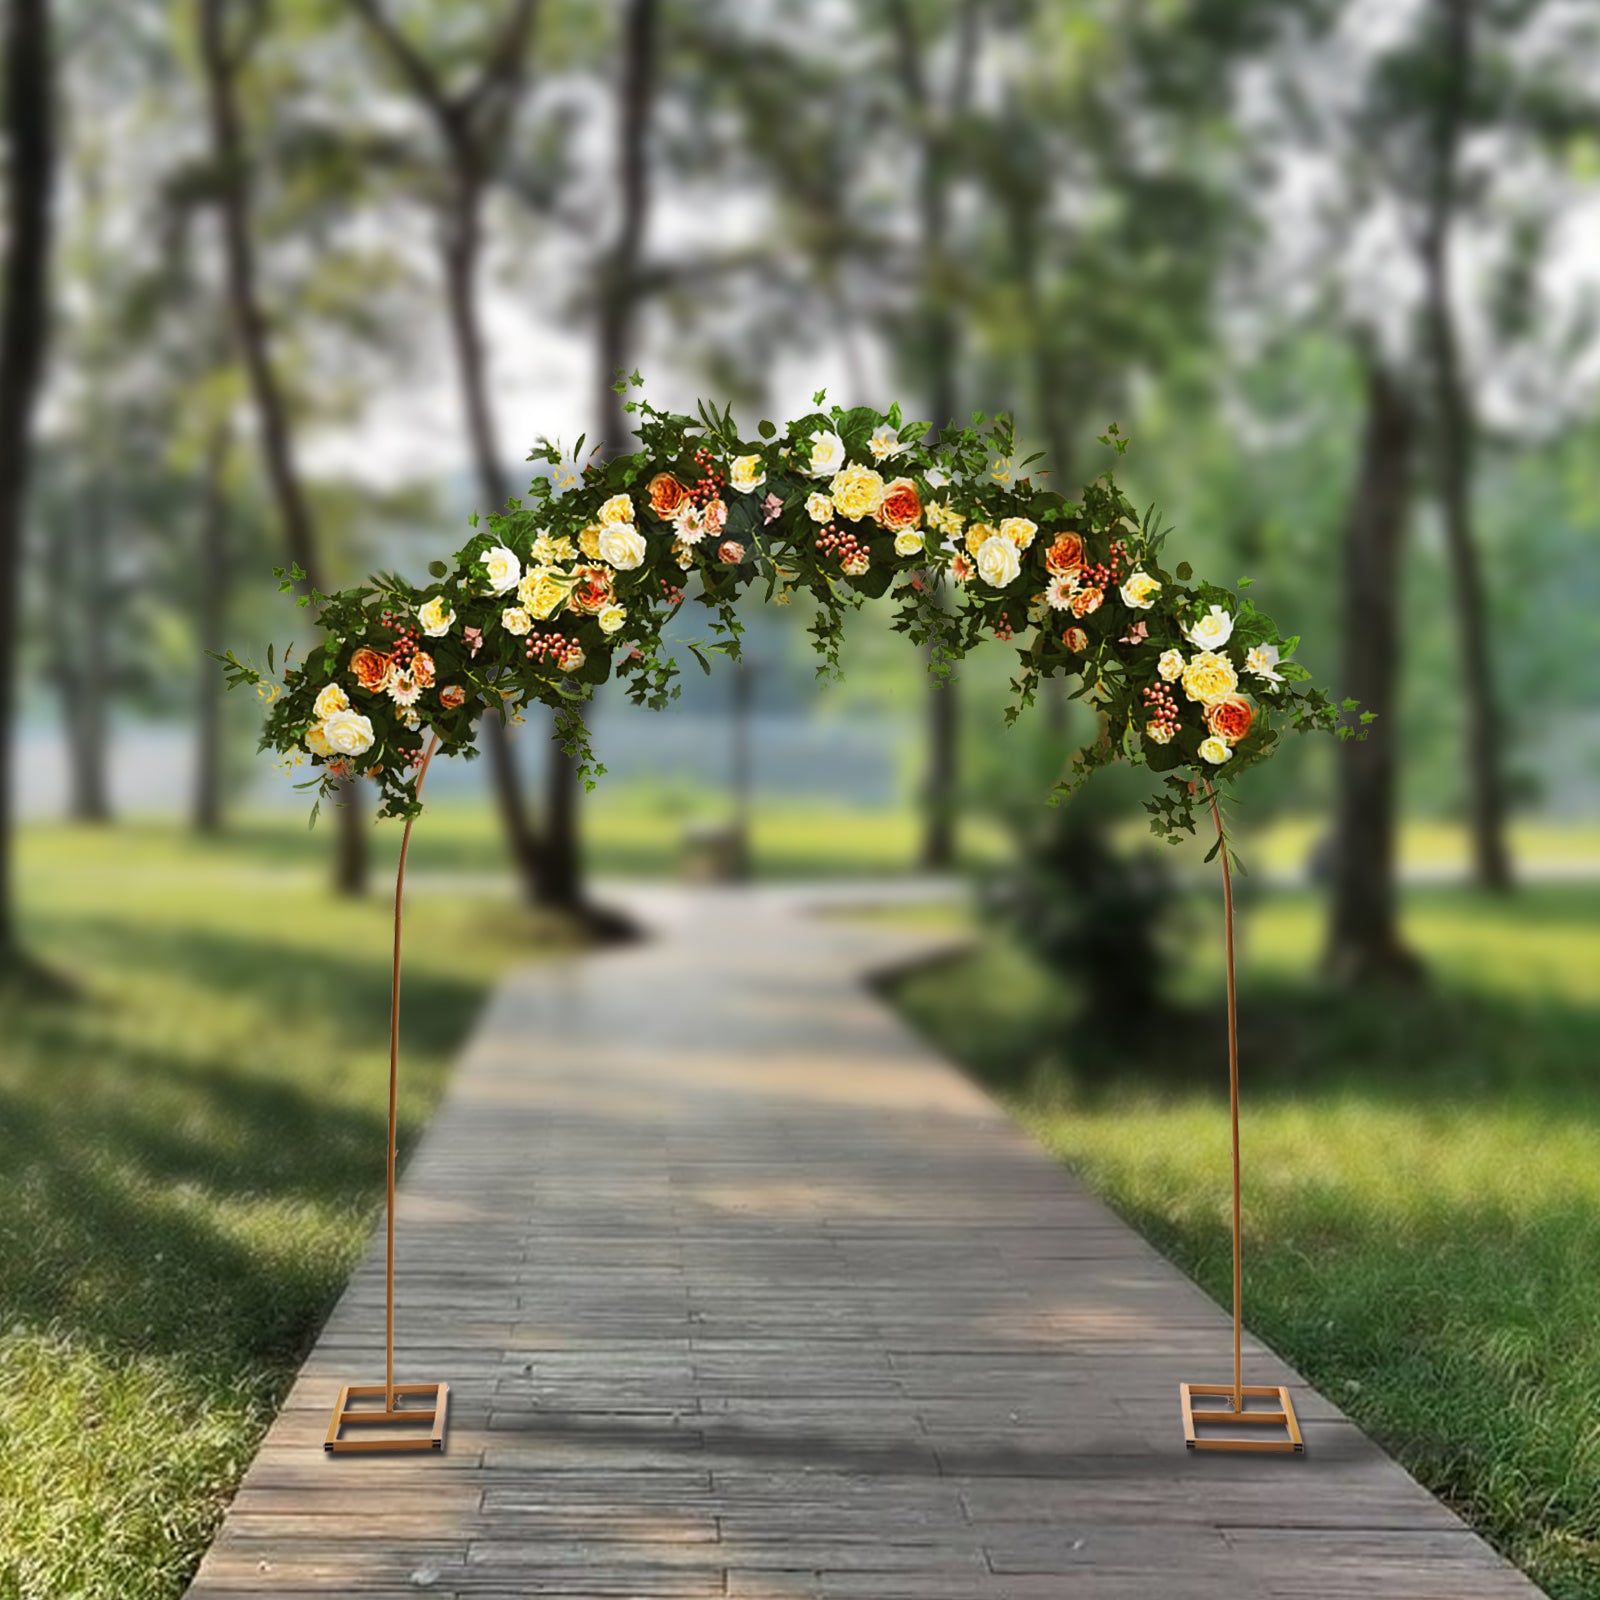 Arco di fiori in metallo dorato, per matrimonio, feste di eventi,compleanno,laurea, decorazione ( 2,3 m)